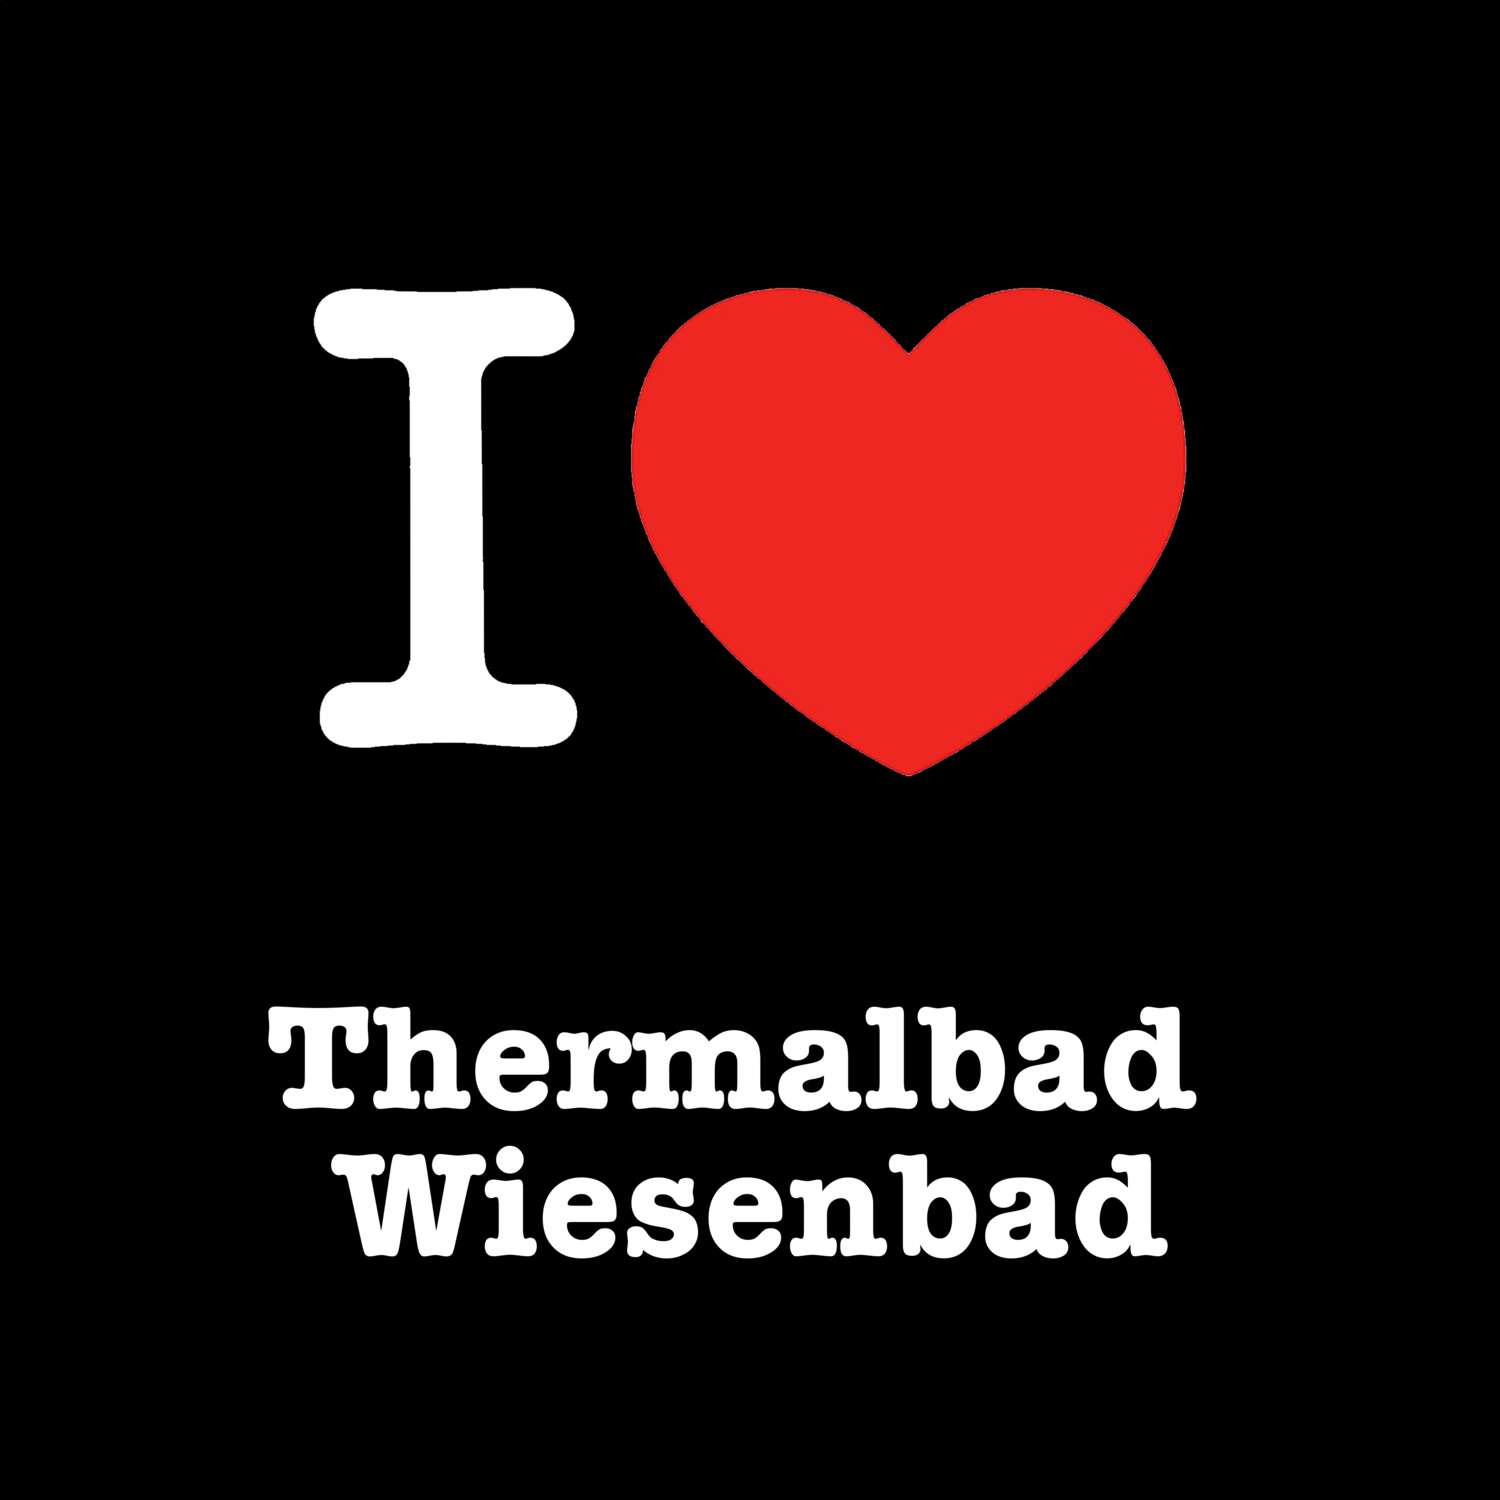 Thermalbad Wiesenbad T-Shirt »I love«